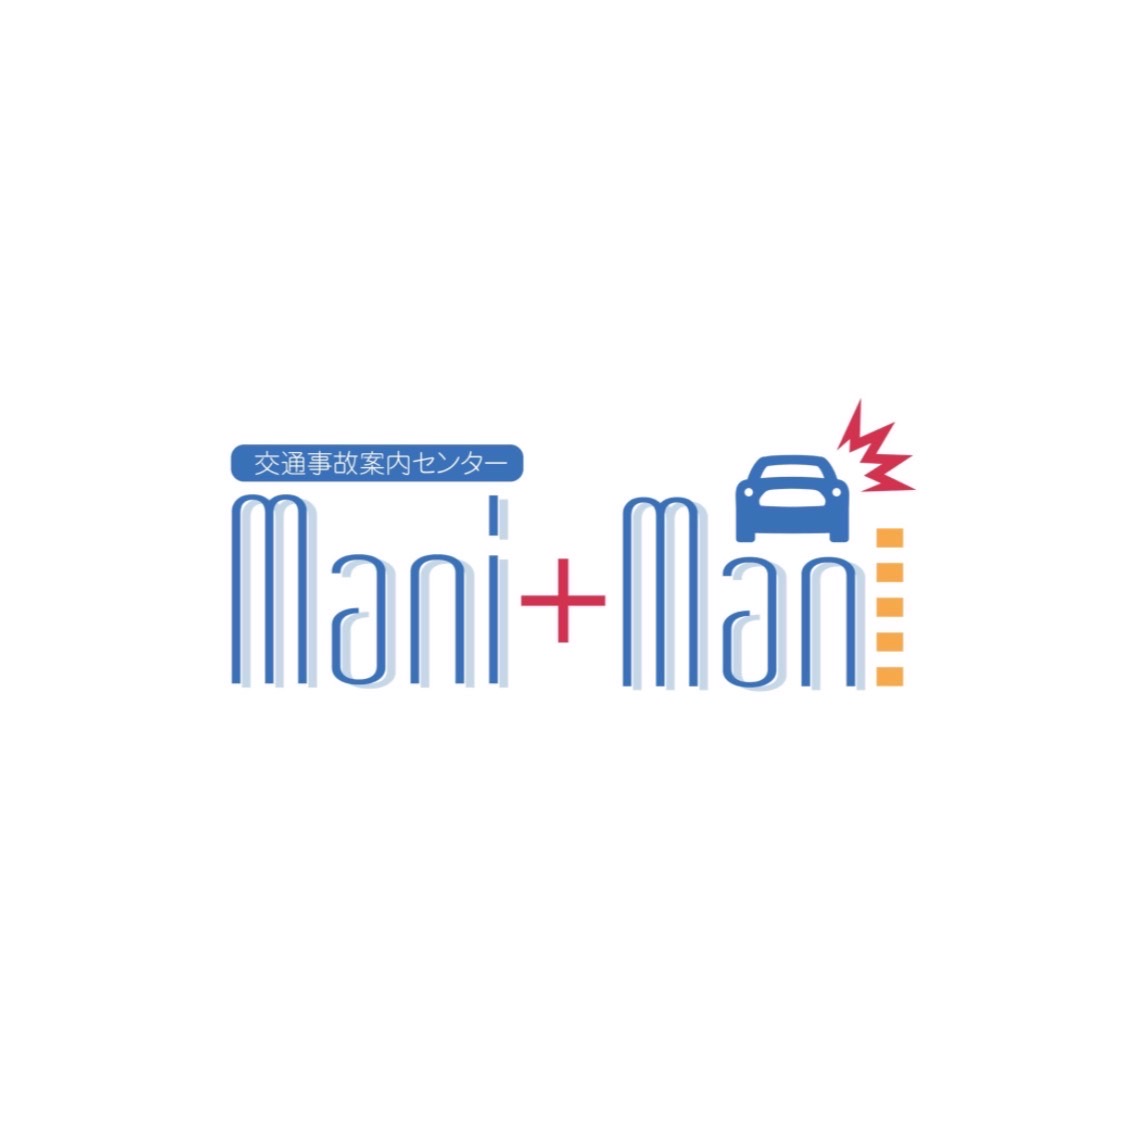 交通事故案内センター Mani Mani - 交通事故案内センター Mani Mani